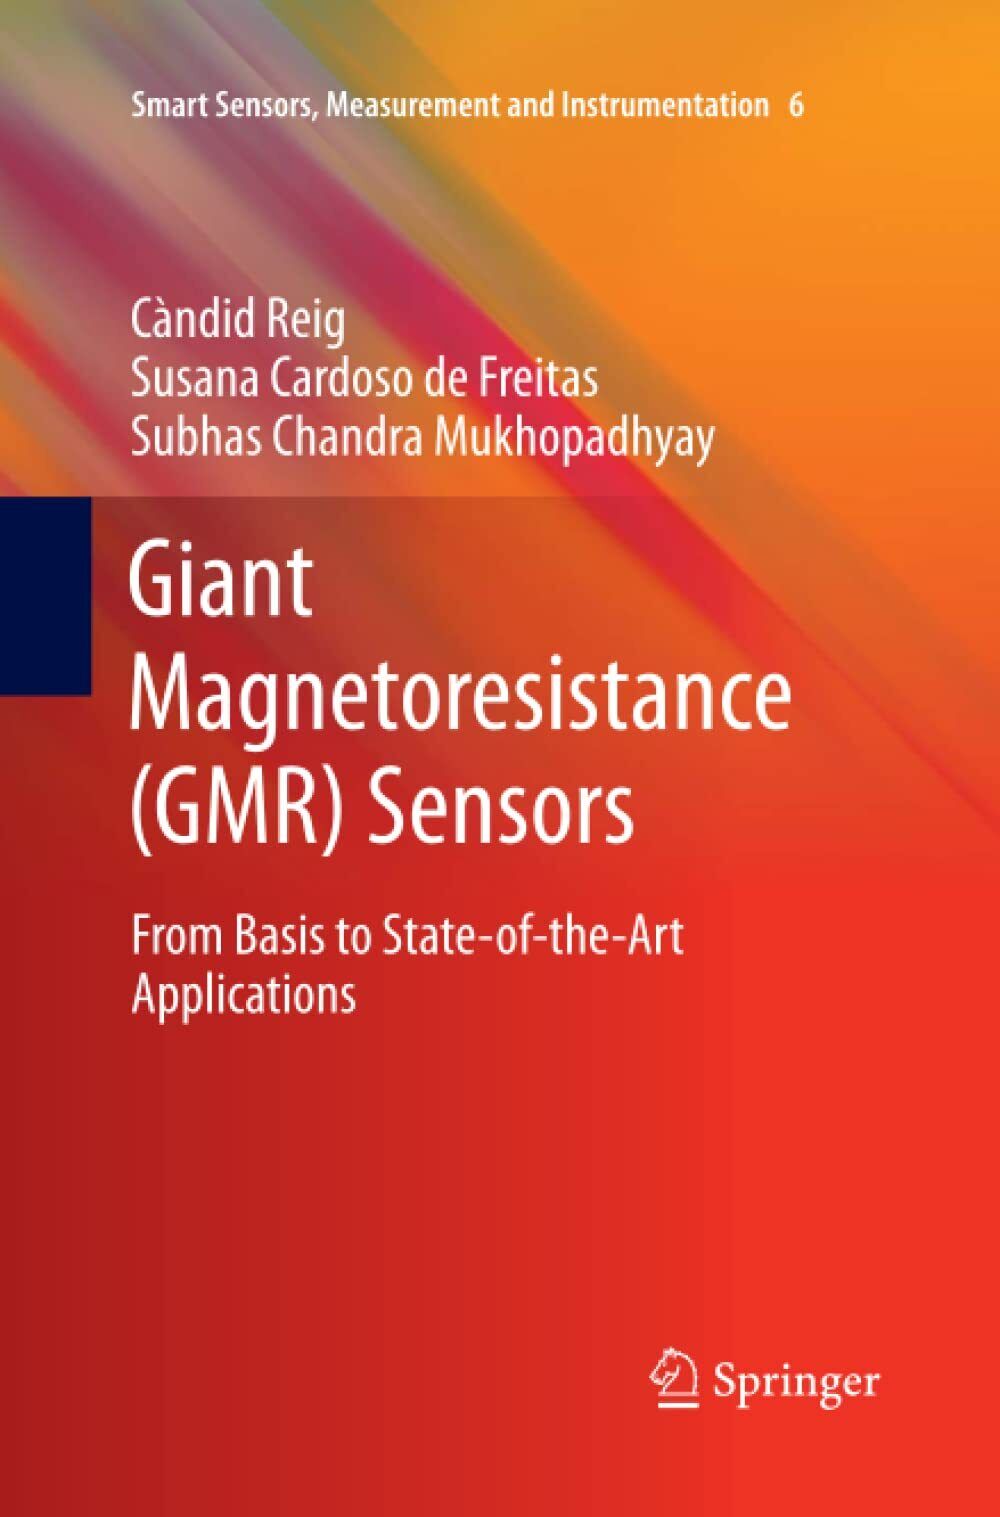 Giant Magnetoresistance (GMR) Sensors - Springer, 2015